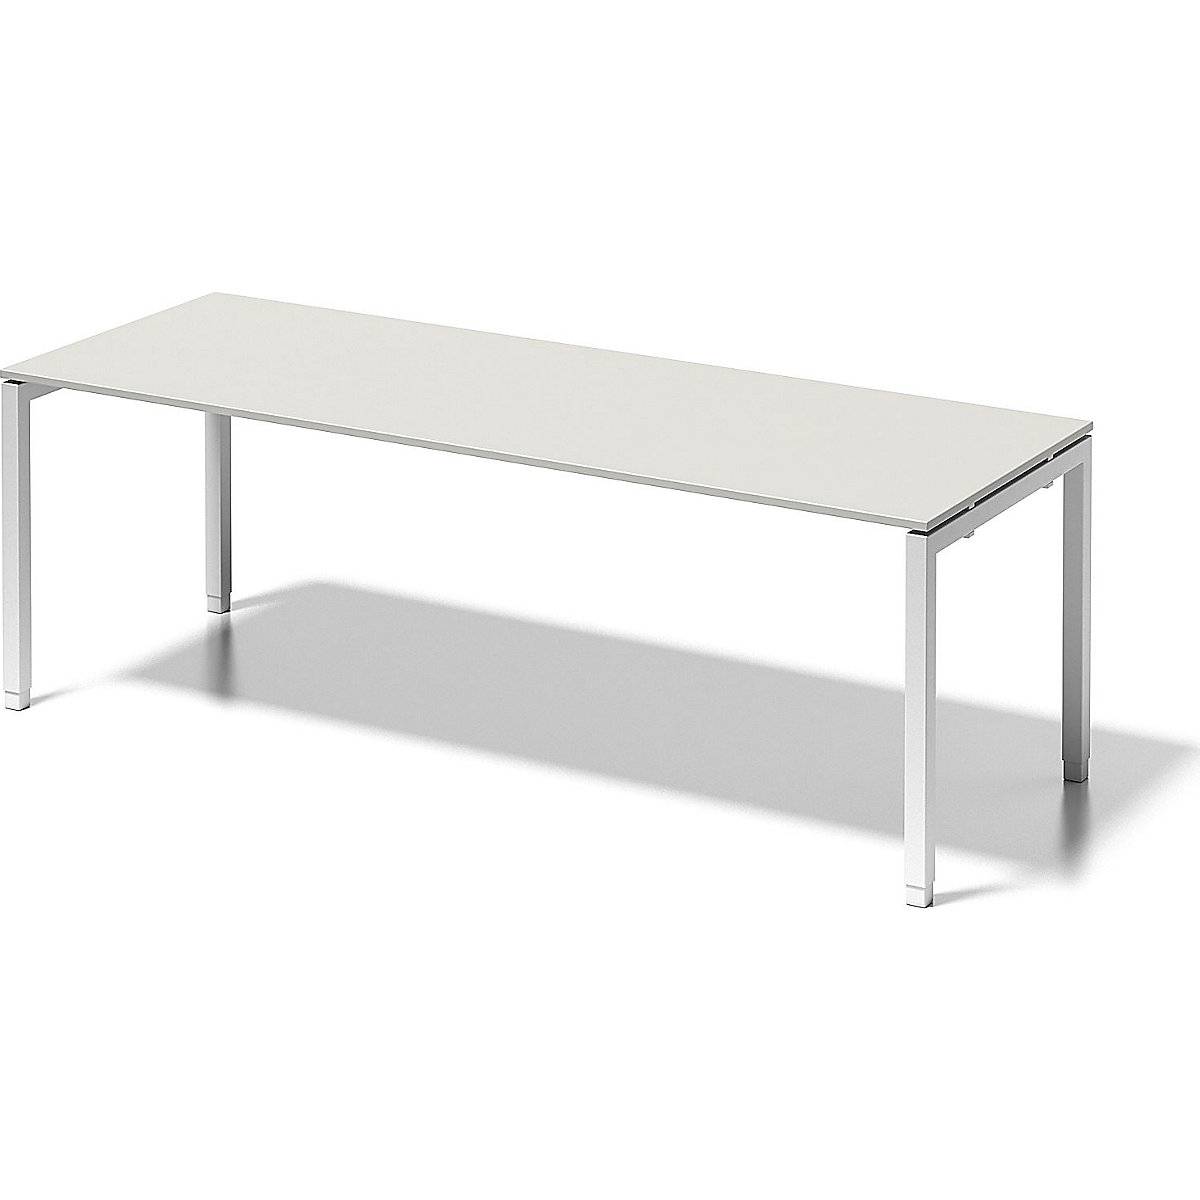 Pisaći stol CITO, postolje u obliku slova U – BISLEY, VxŠxD 650 – 850 x 2200 x 800 mm, postolje u bijeloj boji, ploča u sivobijeloj boji-1